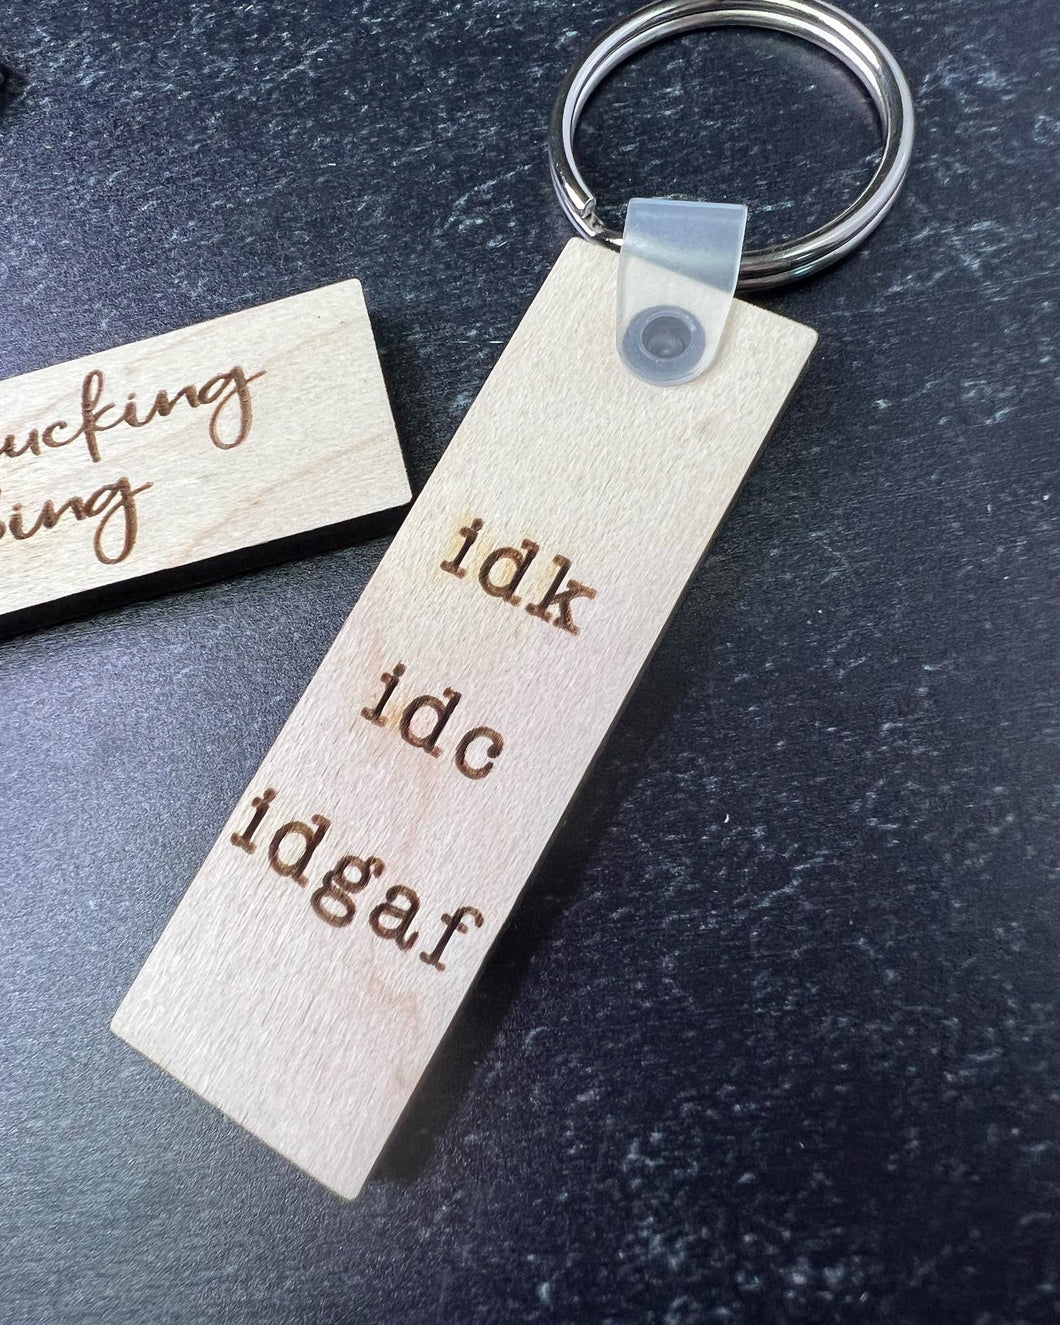 Key chain - idk, idc, idgaf